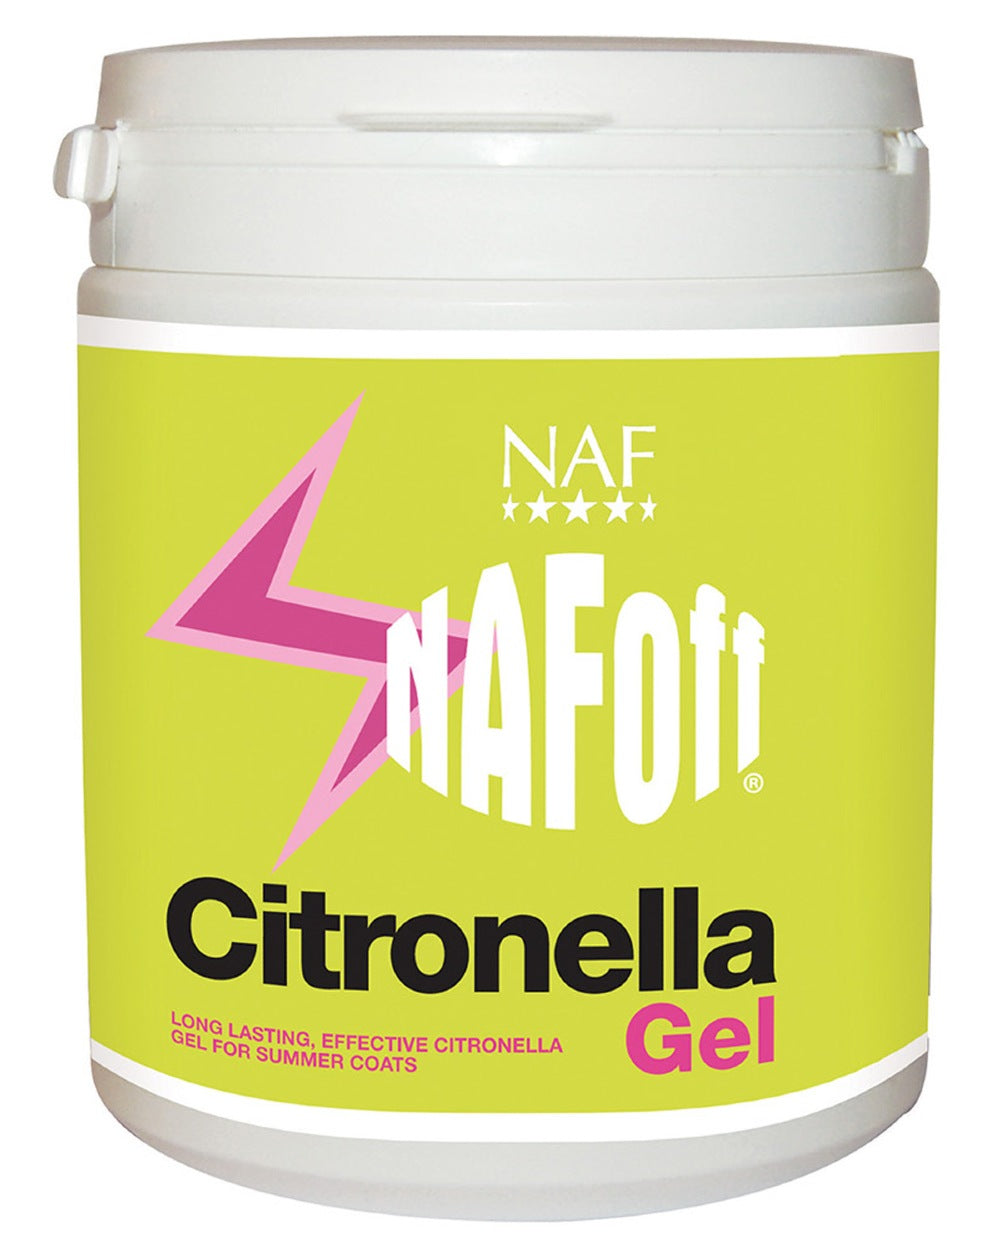 NAF Off Citronella Gel 750g on white background